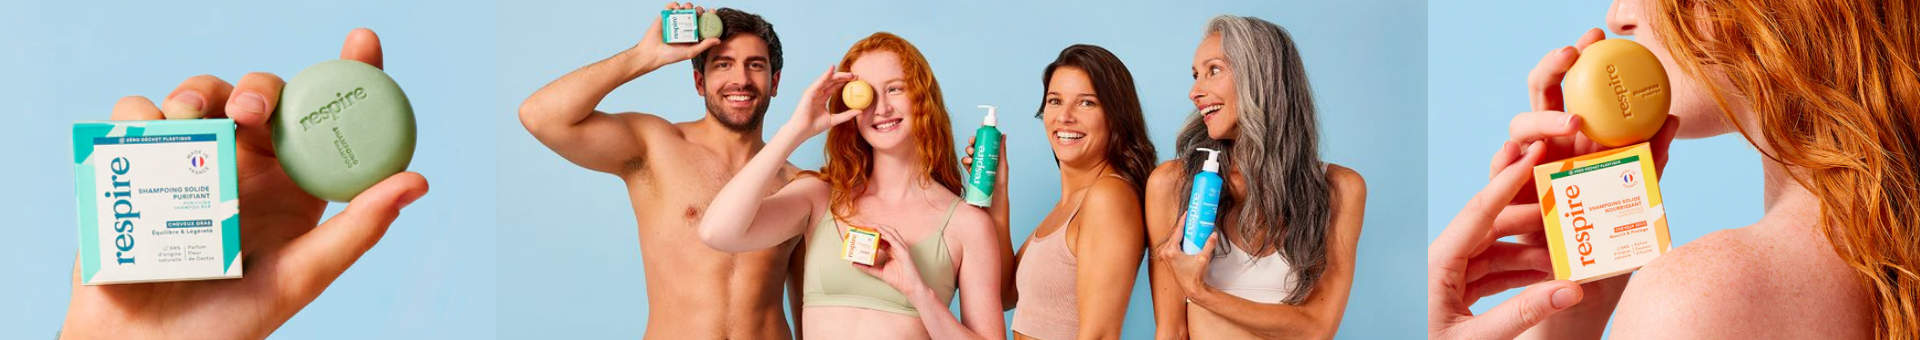 4 personnes de tout âges avec des shampoings de la marque respire acheté en parapharmacie